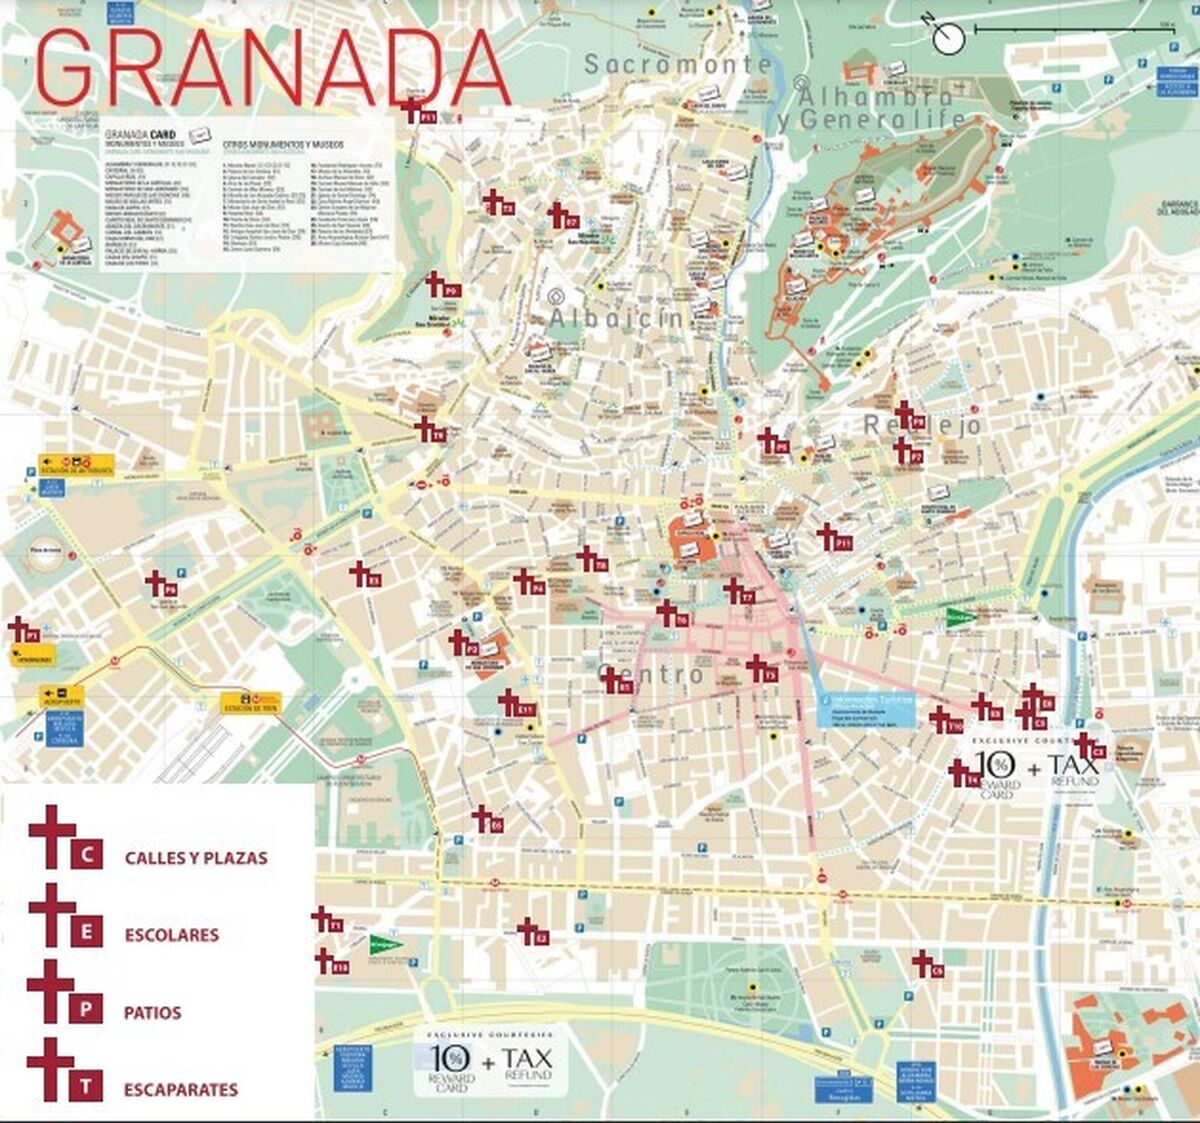 Fiesta de las cruces de Mayo en Granada 2020 - Poblaciones que celebran la fiestas de las cruces ✈️ Foro Andalucía